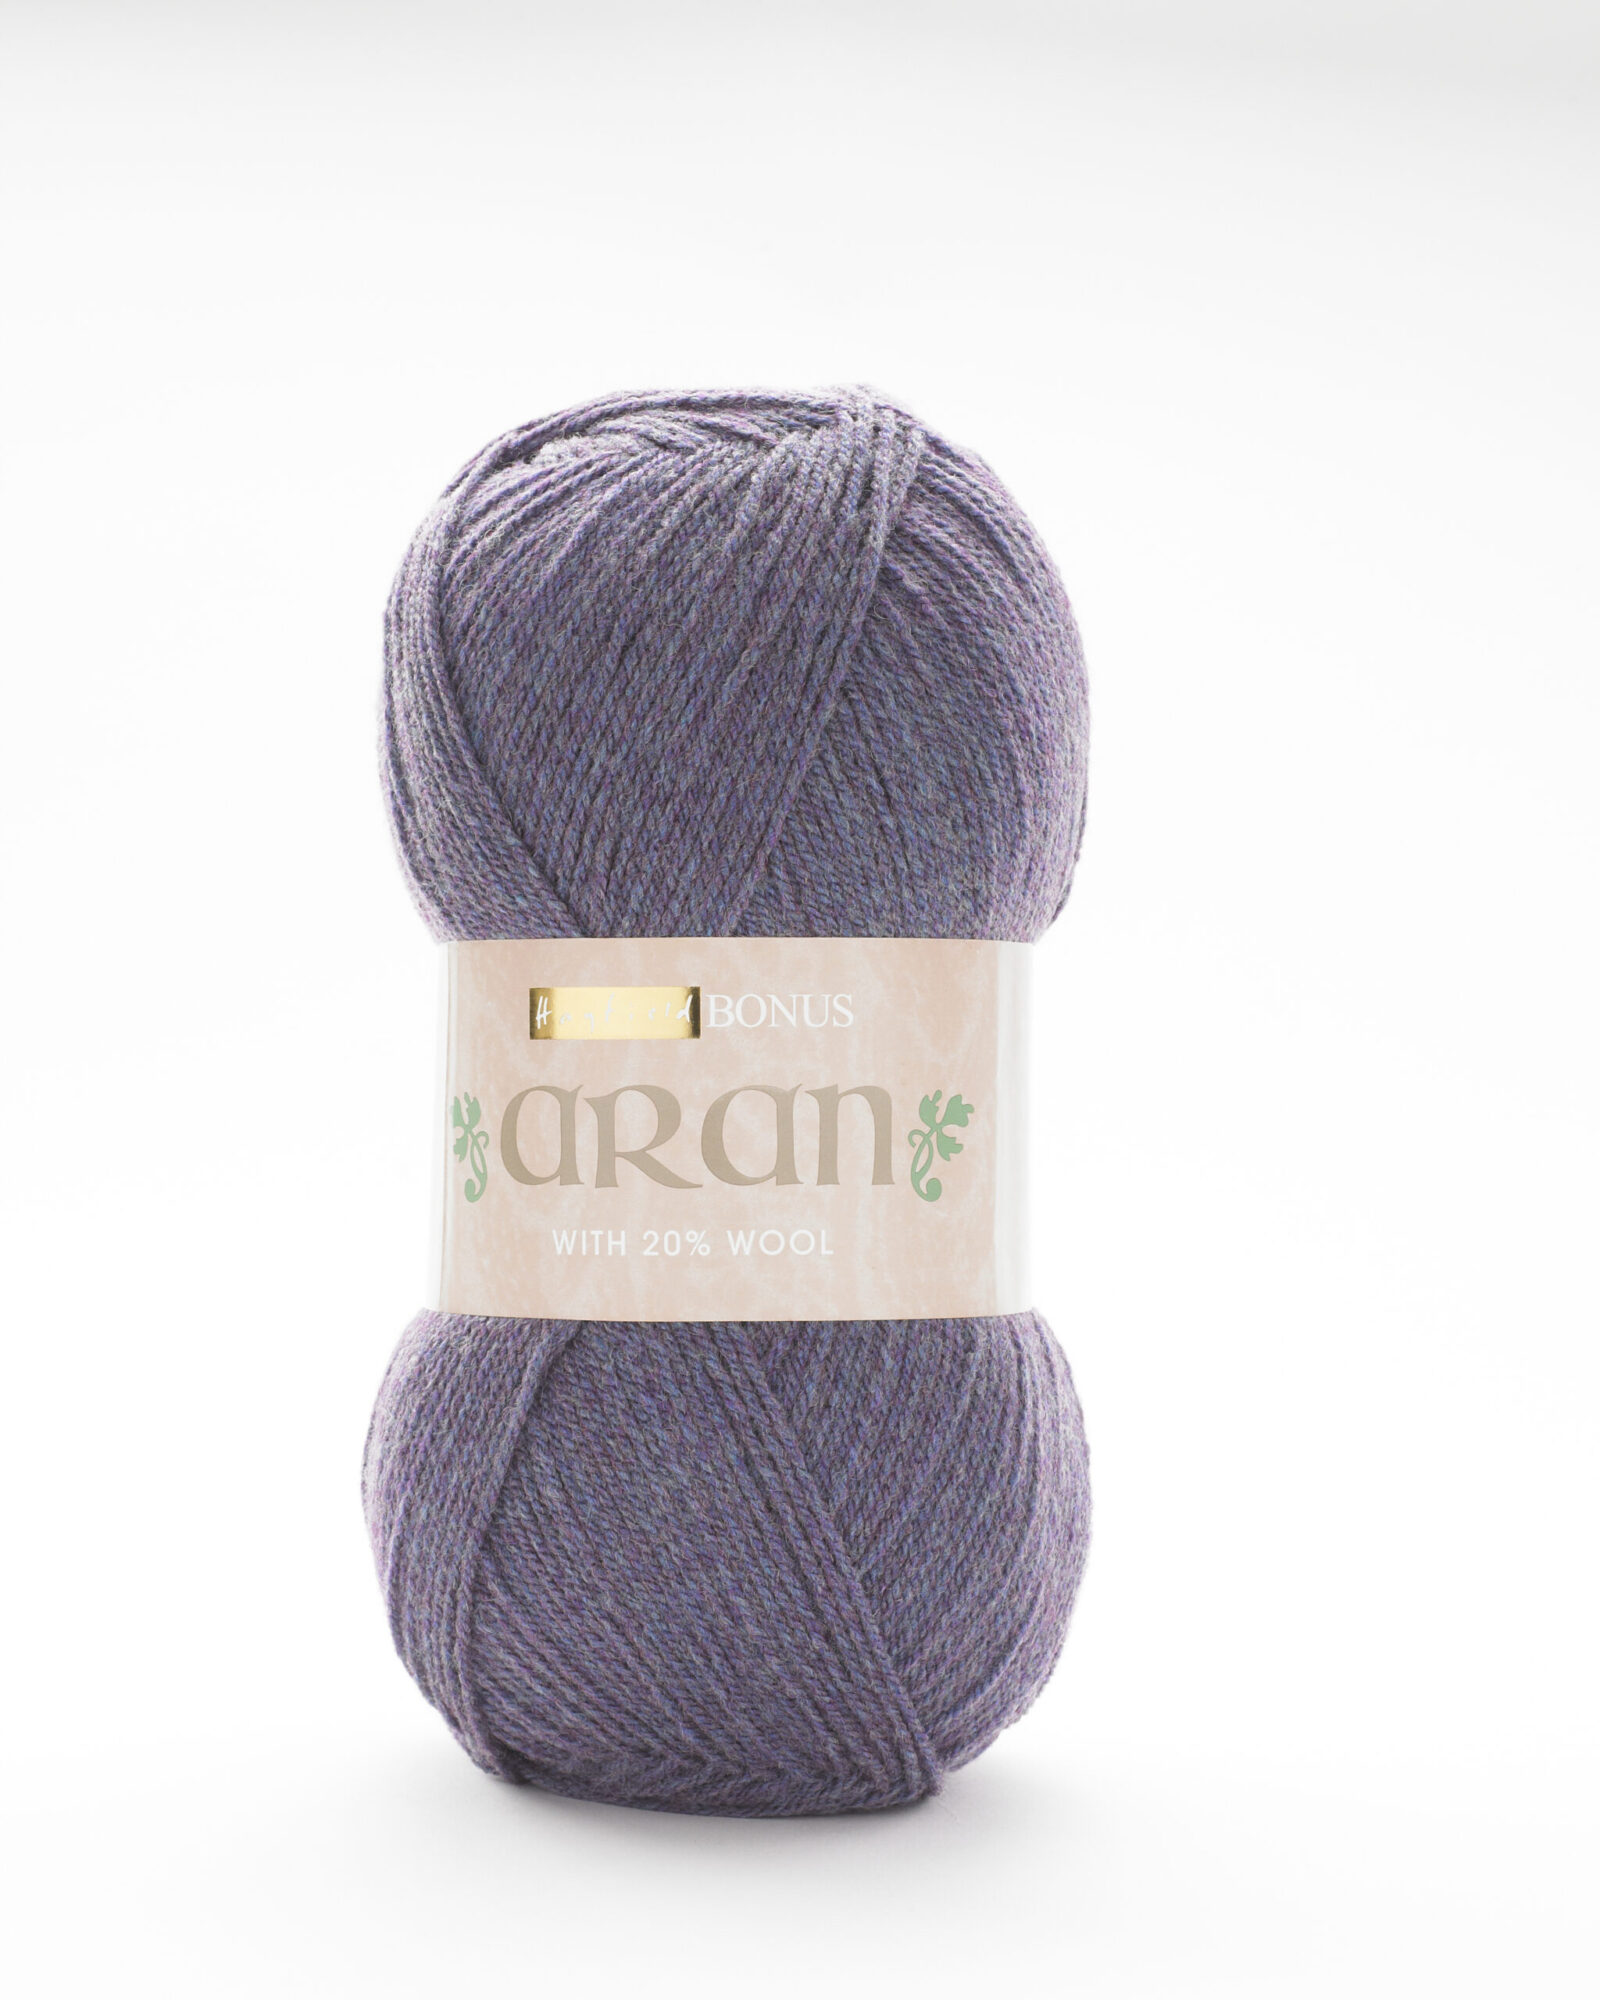 hayfield-bonus-aran-with-wool